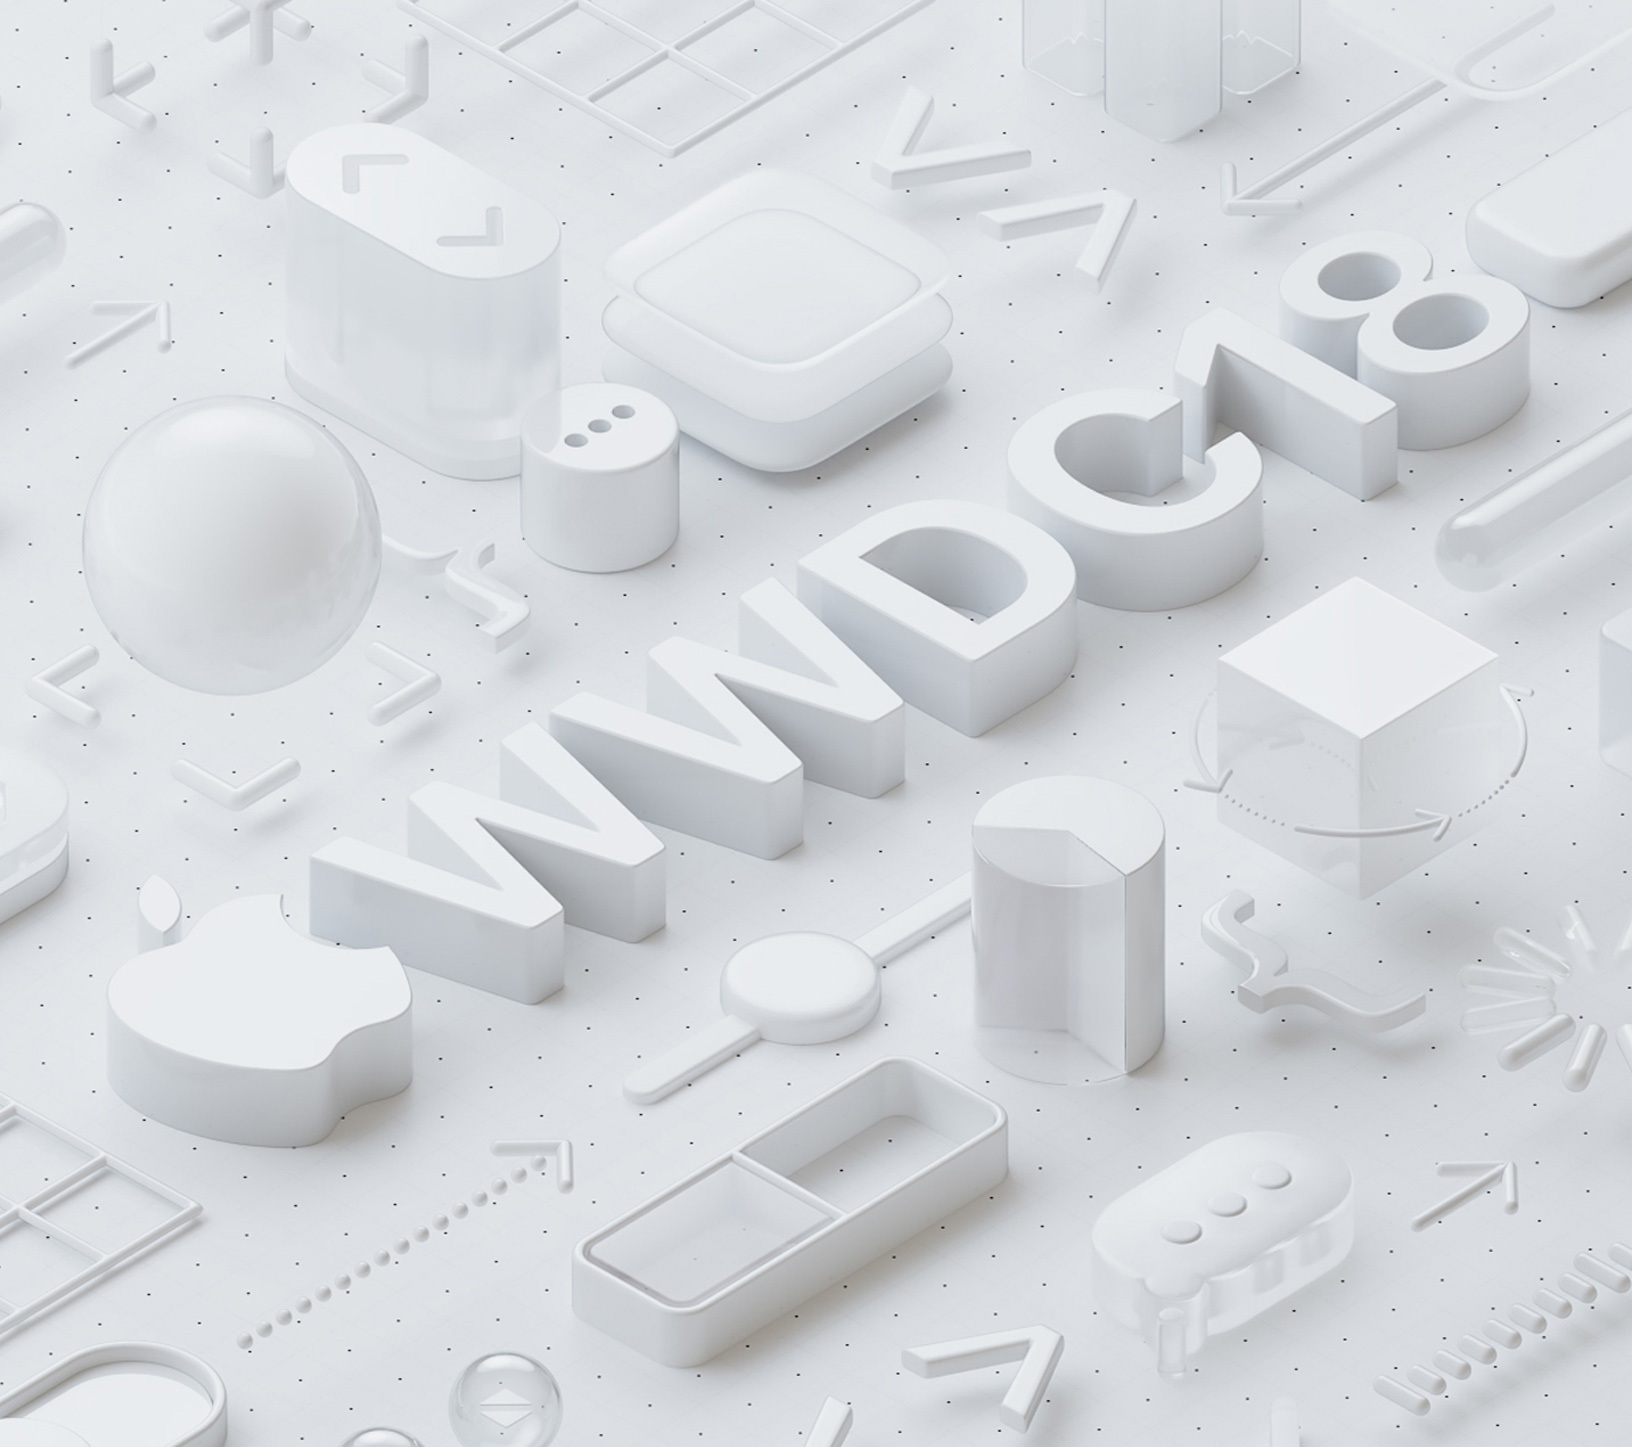 苹果公布WWDC2018开幕日期 定在6月4日至8